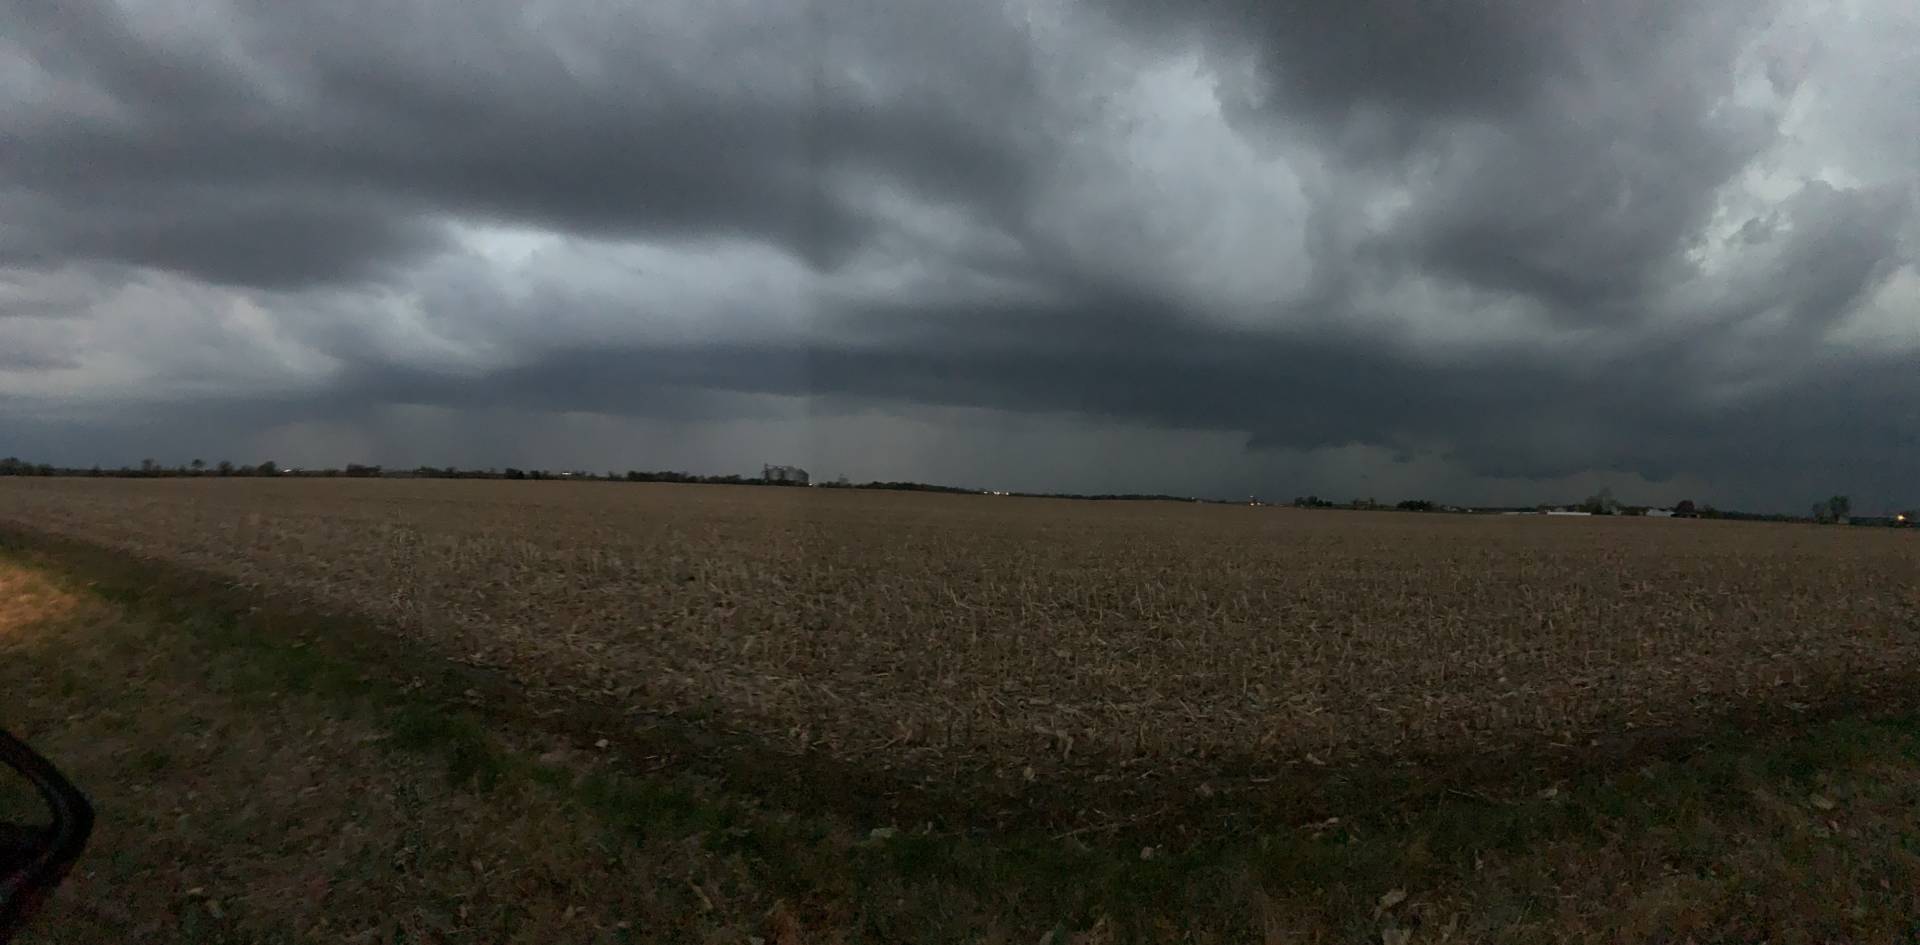 Pano of the storm near Trivoli, IL #ilwx